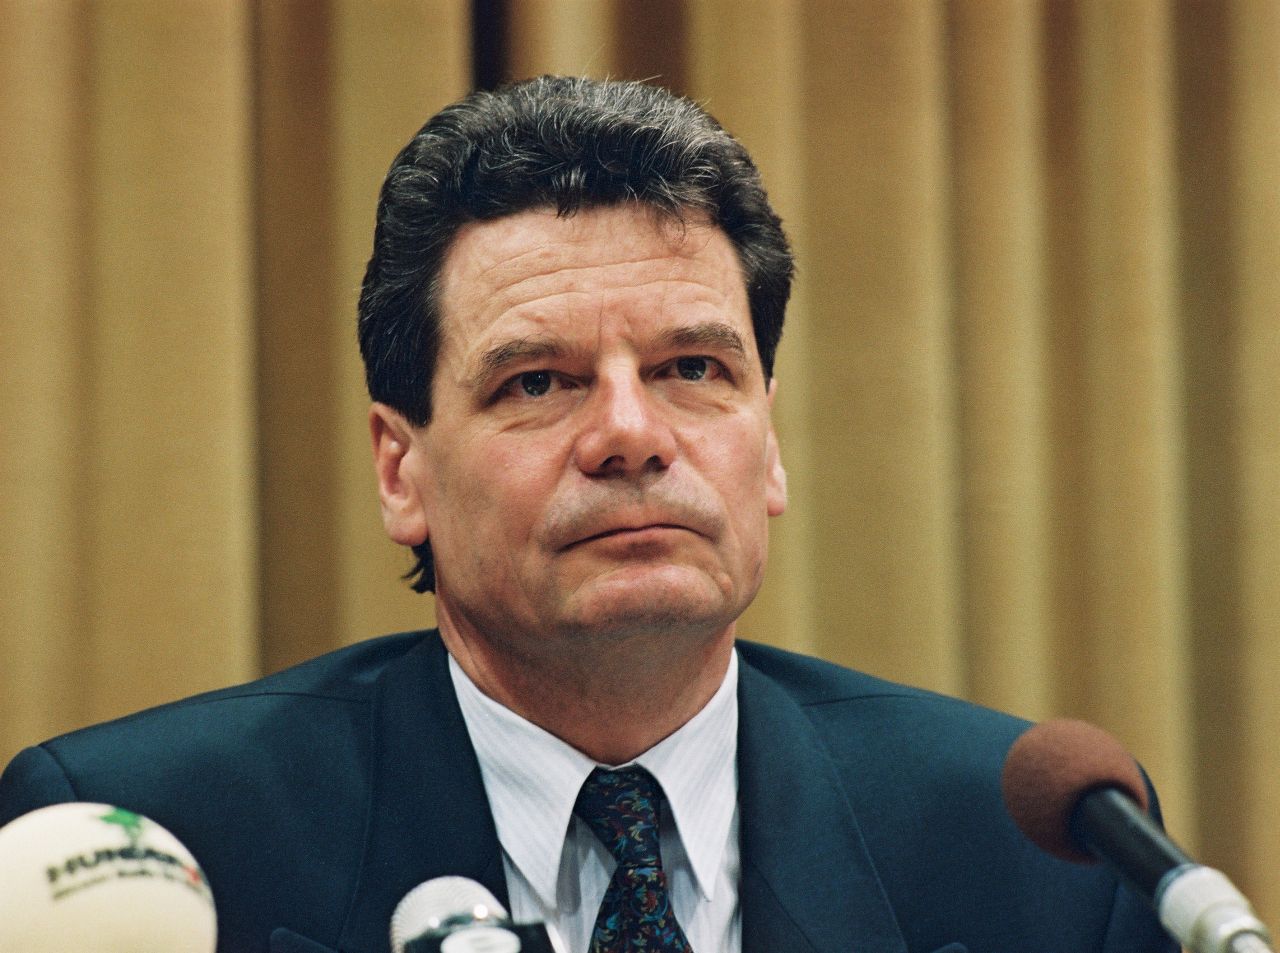 Joachim Gauck, Bundesbeauftragter für die Unterlagen des Staatssicherheitsdienstes der ehemaligen DDR (1990-2000) bei einer Pressekonferenz zum Thema 